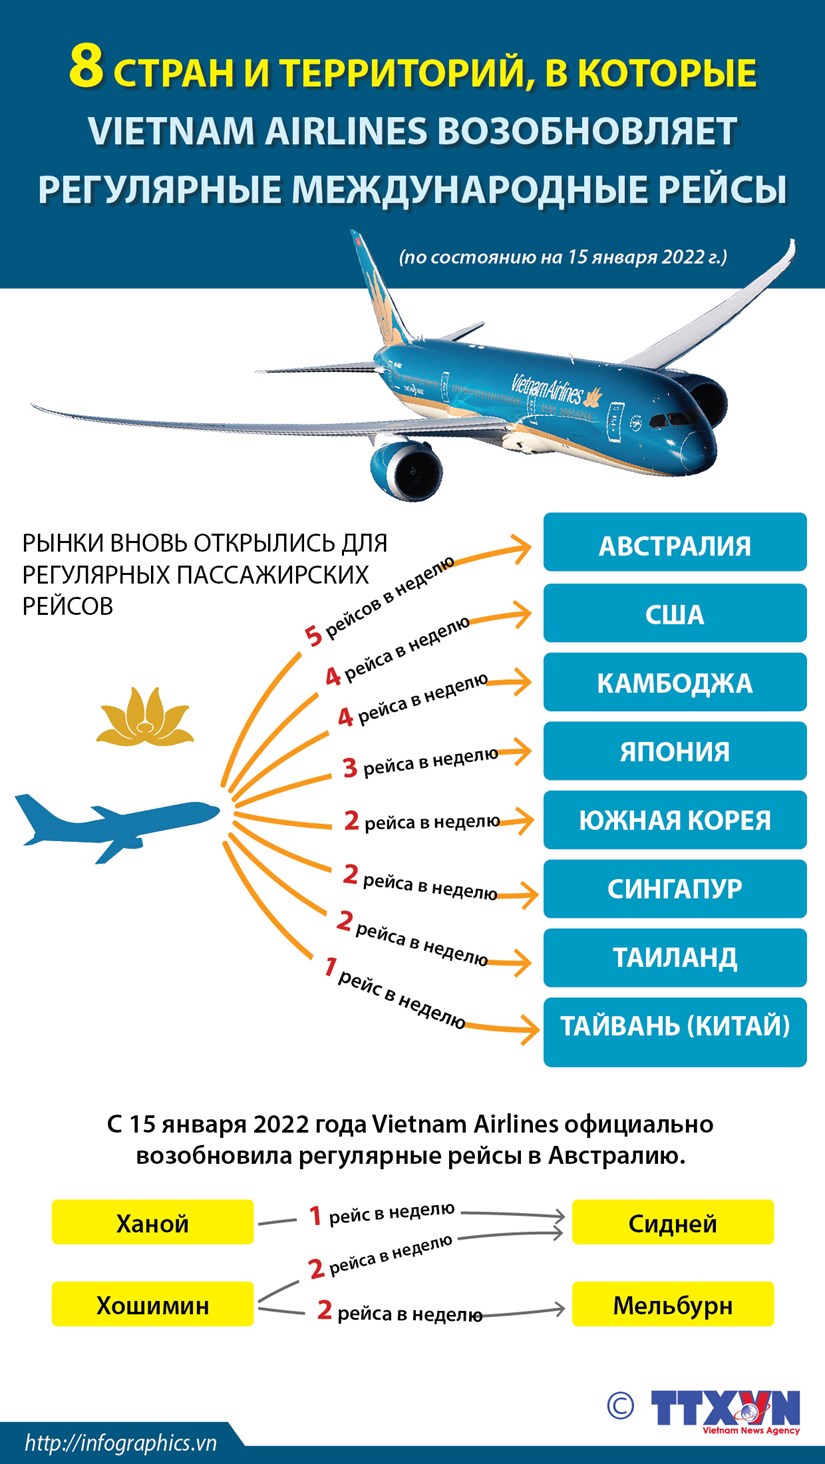 Vietnam Airlines вновь открывает международные реисы в 8 стран и территории hinh anh 1